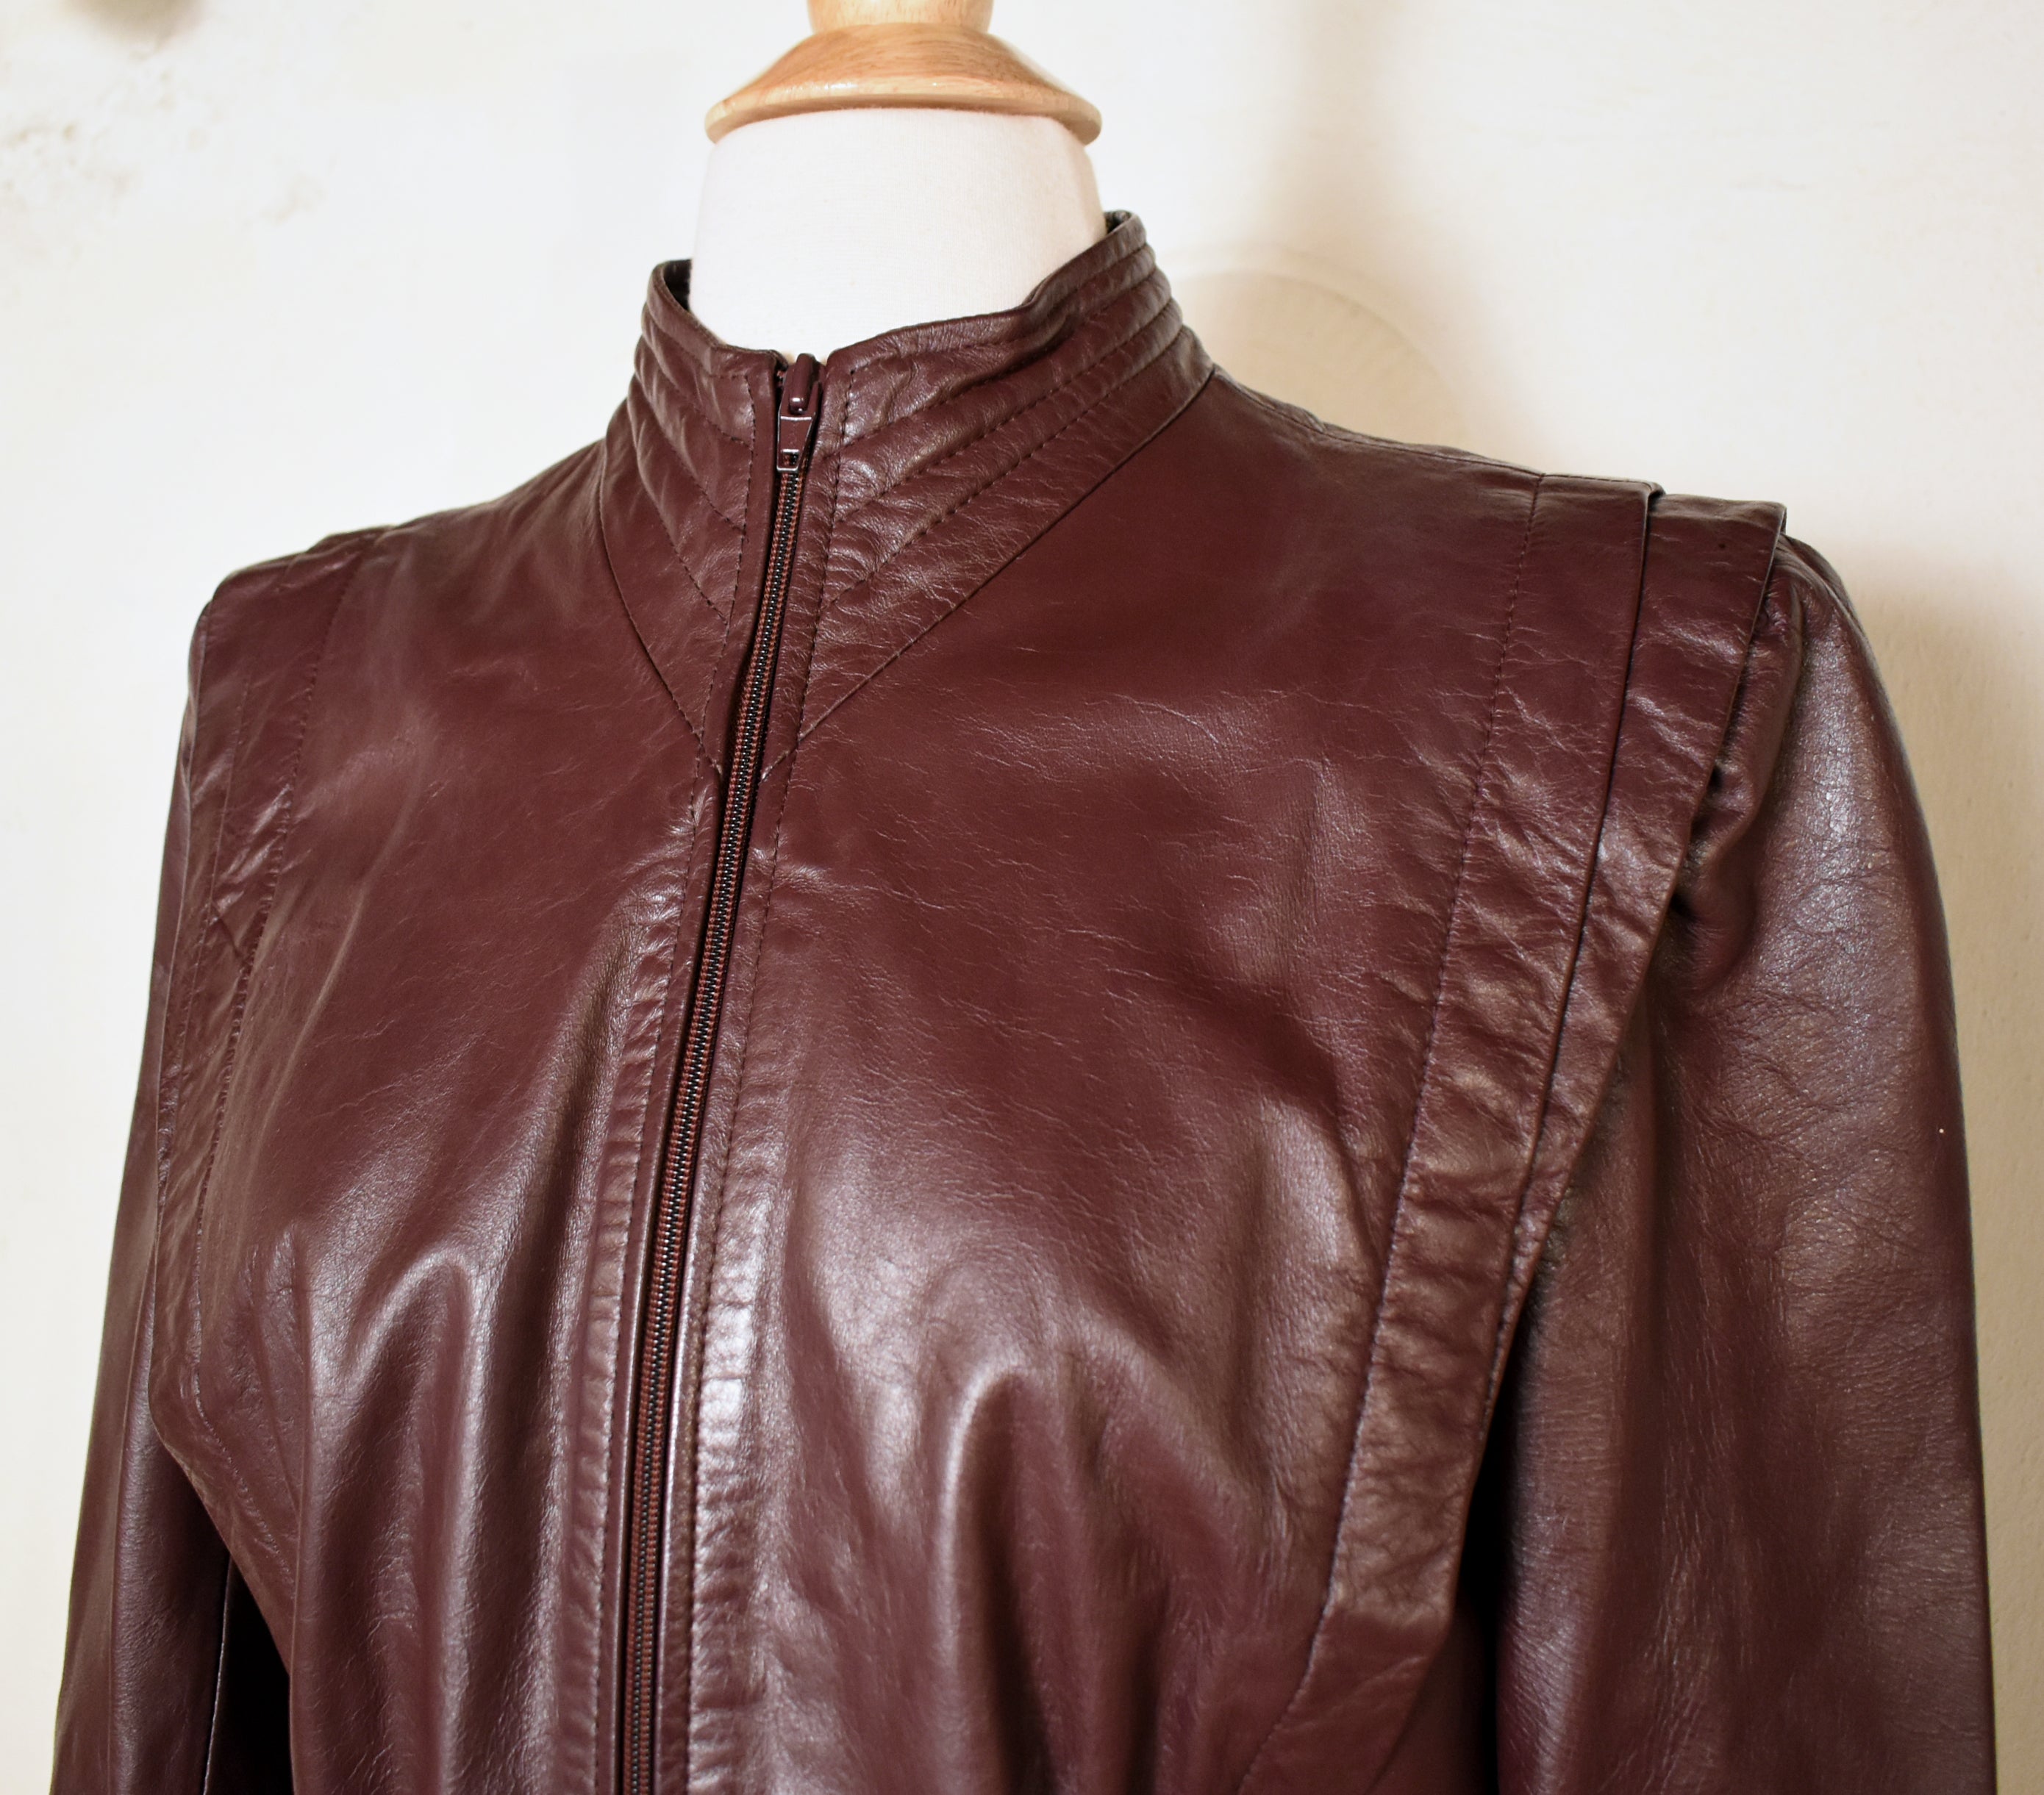 Inmyelementclothing Cropped Leather Jacket, Vintage Brown Leather Bomber Jacket, Cropped Bomber Jacket, Distressed Brown Leather Jacket